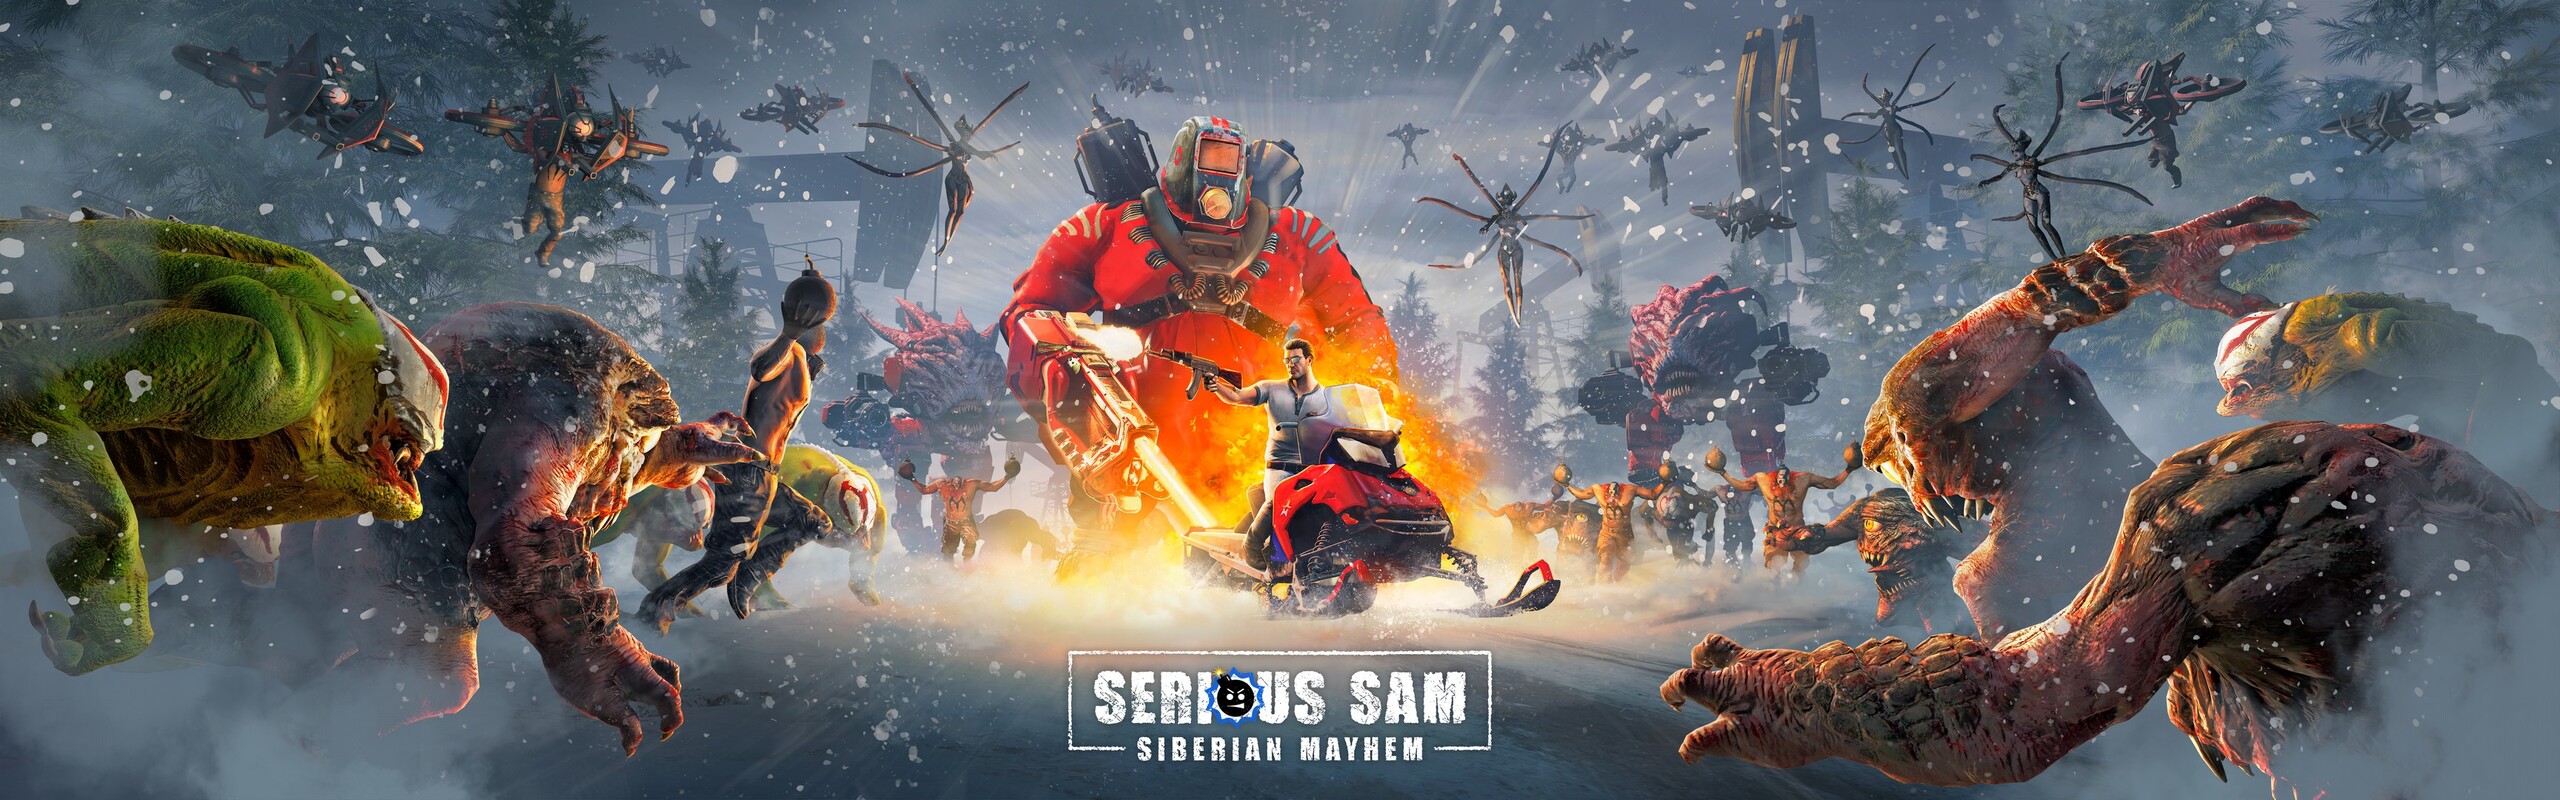 Serious Sam: Siberian Mayhem, постер № 2